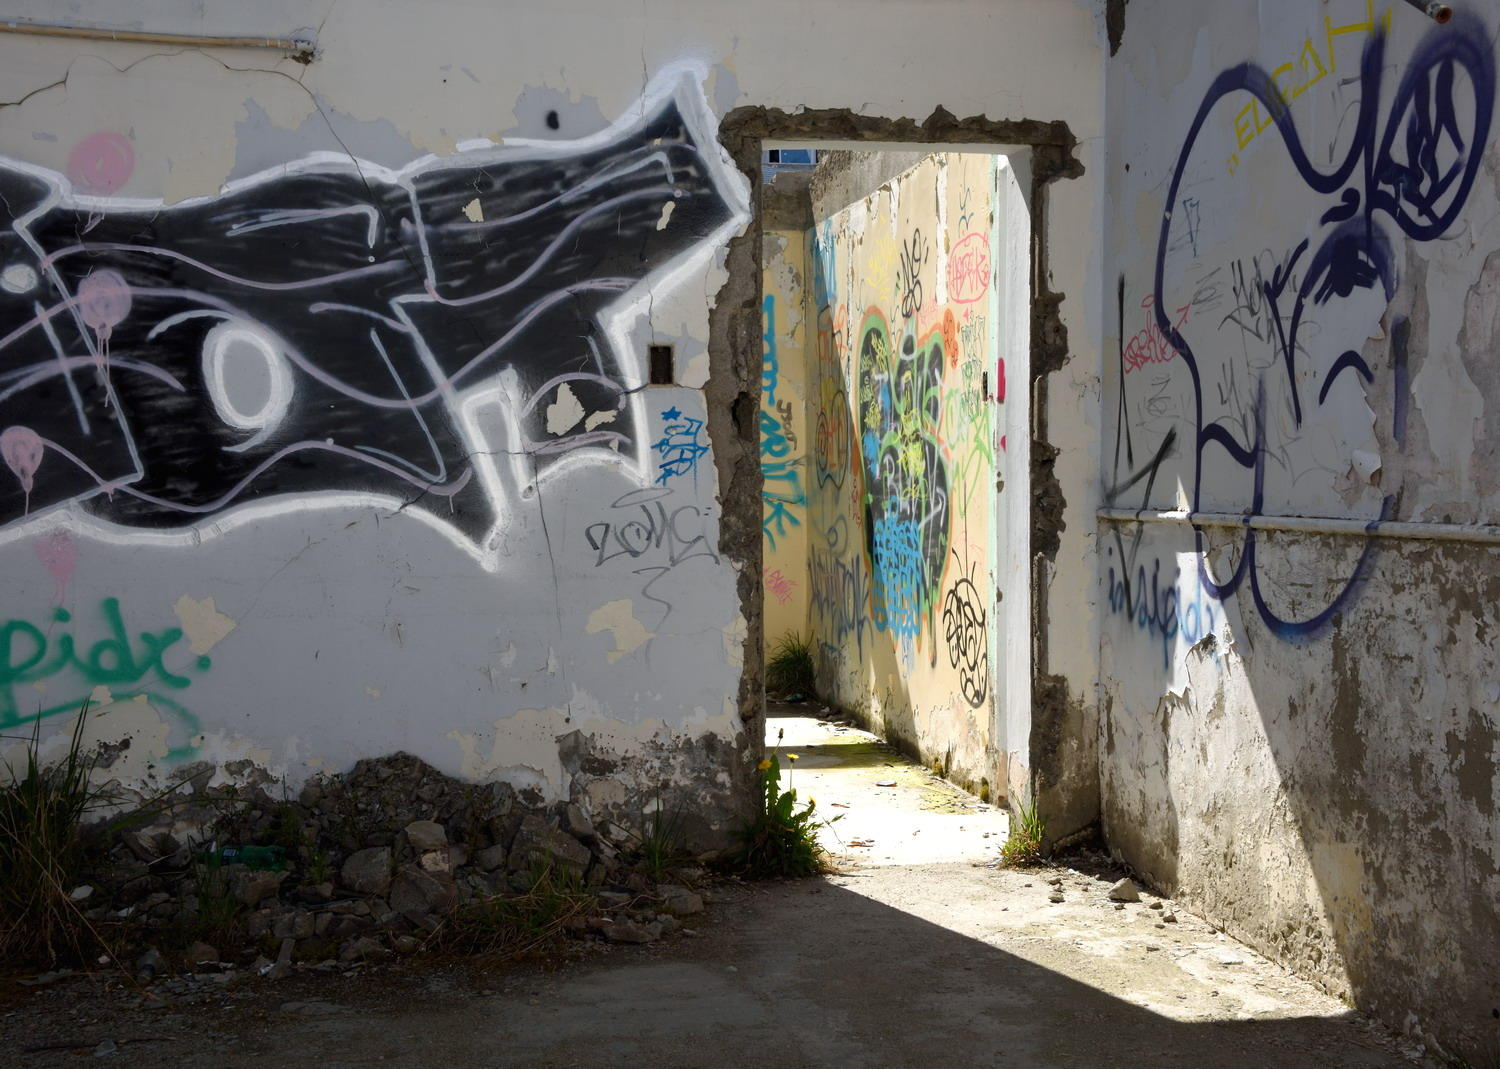 DSC_9346_1A1 - Abandoned House Graffiti